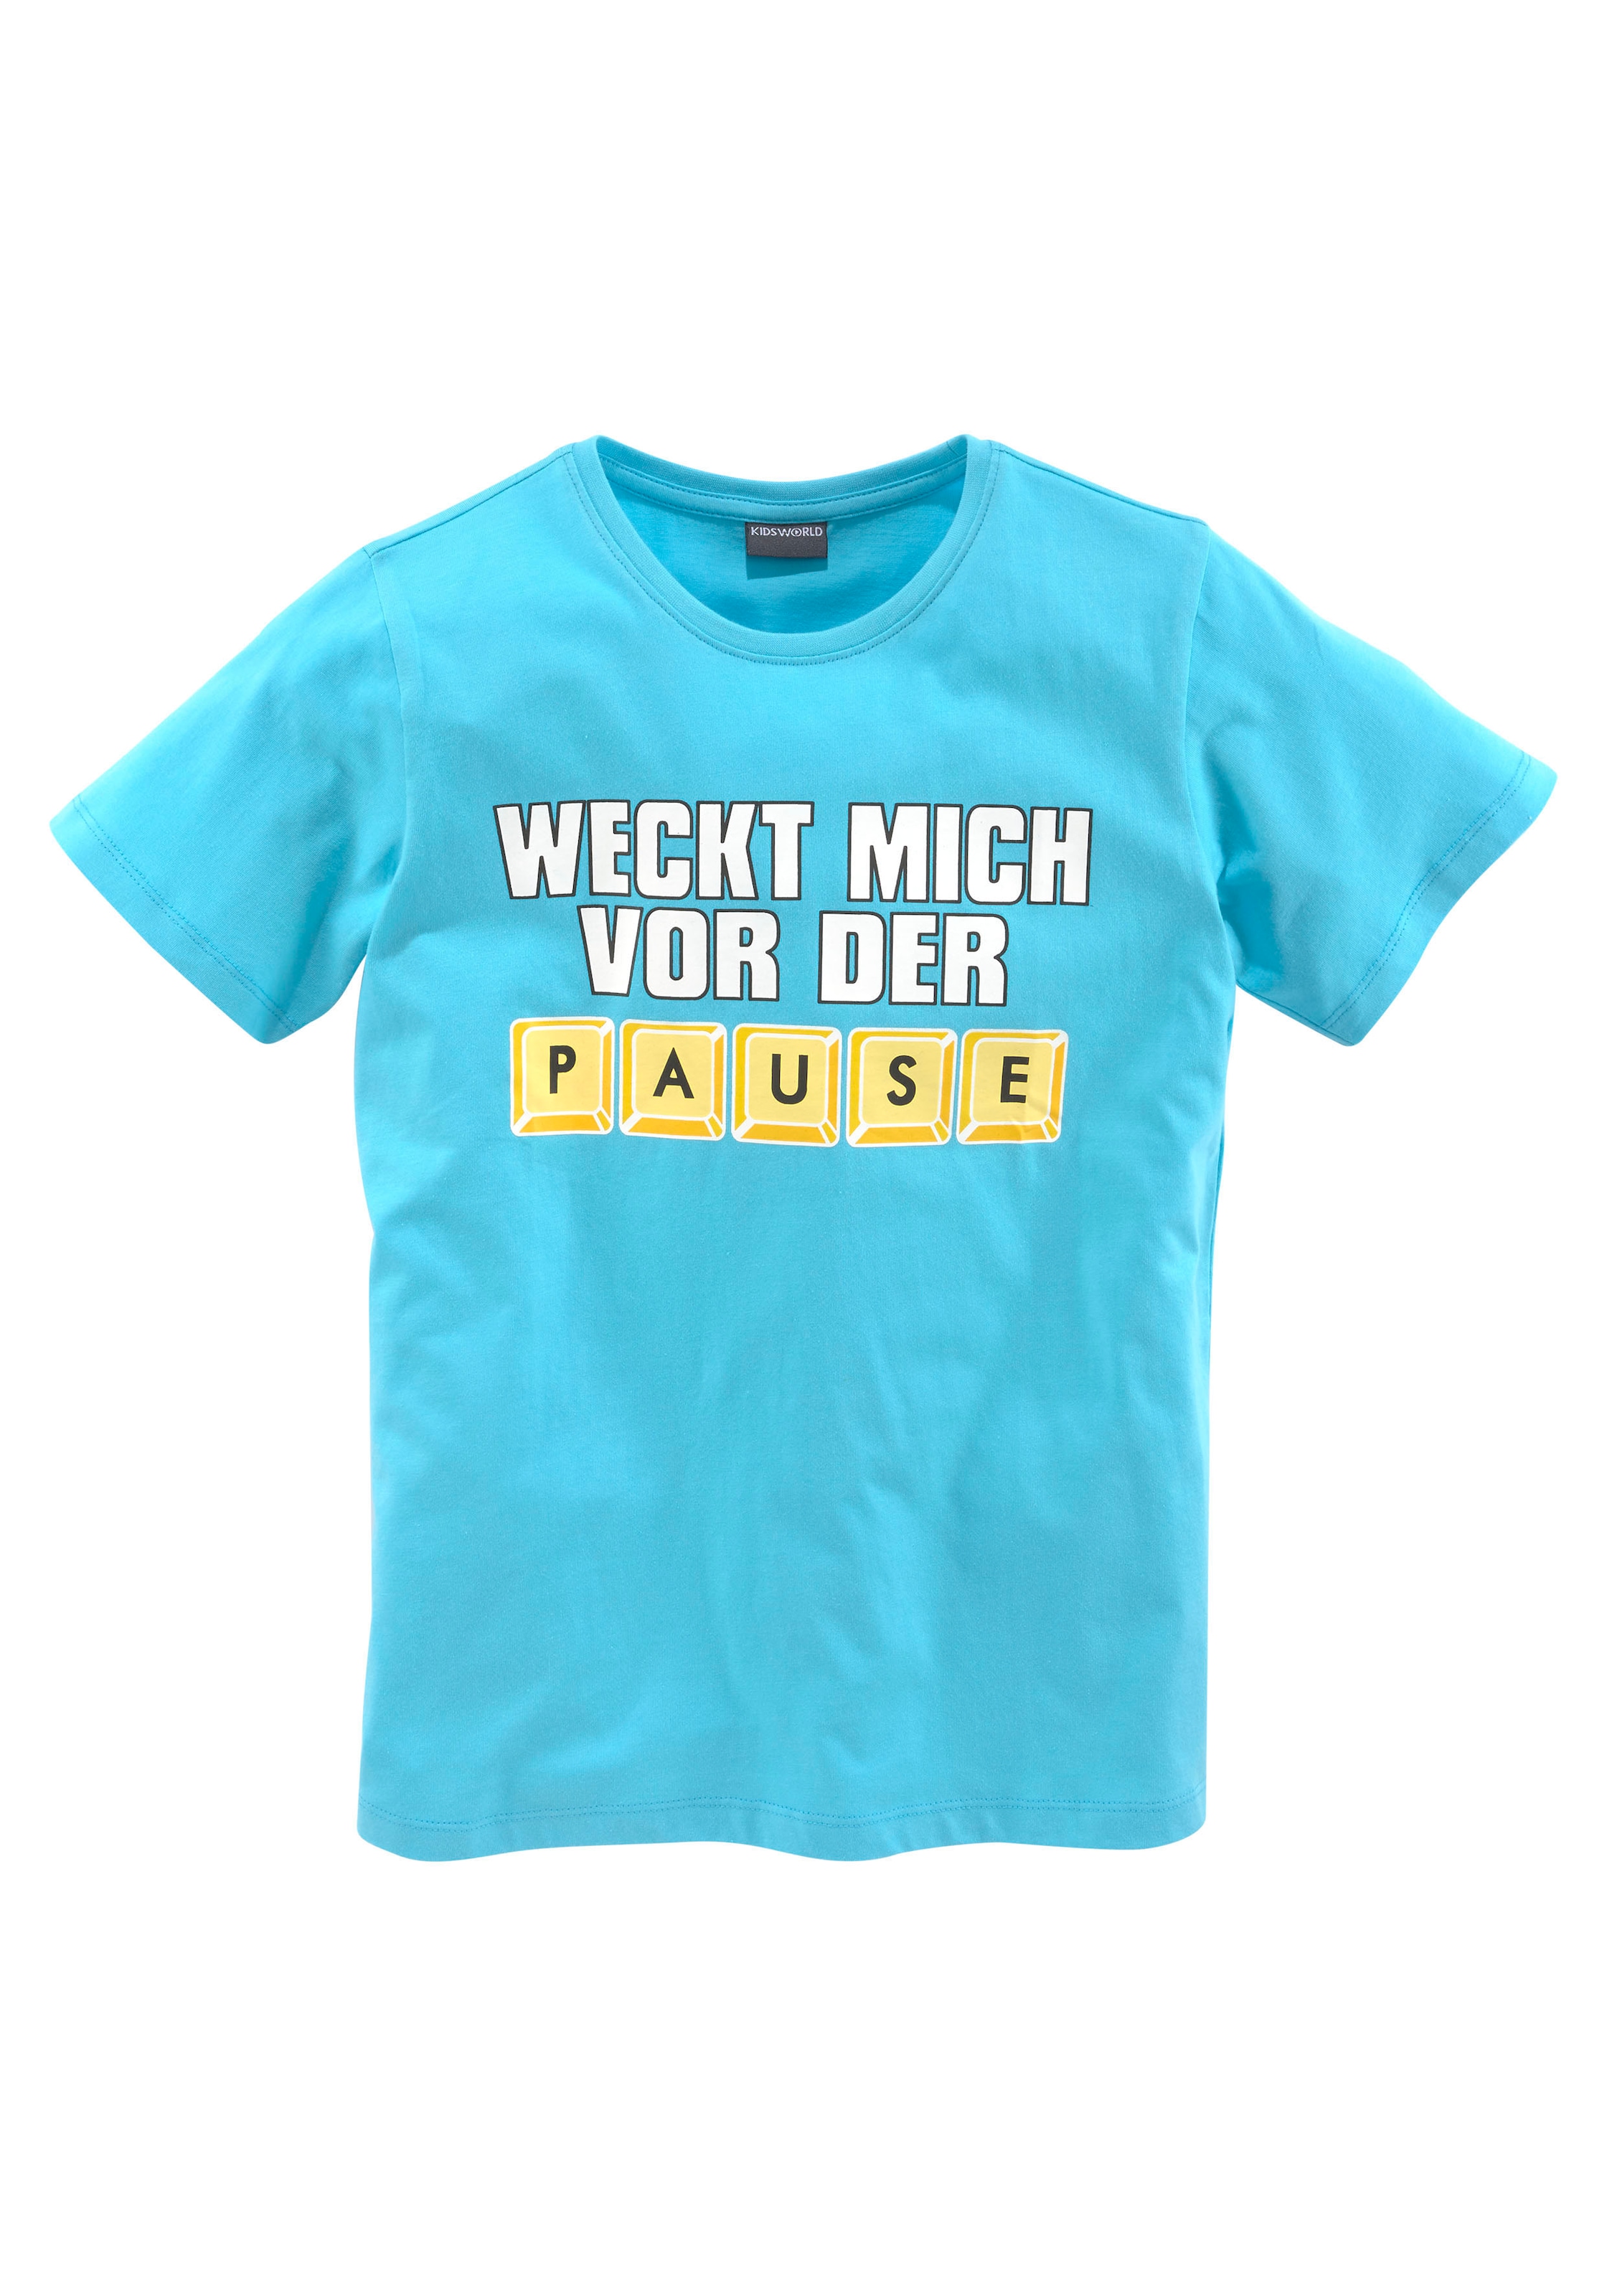 VOR DER PAUSE«, T-Shirt KIDSWORLD bei »WECK Spruch MICH